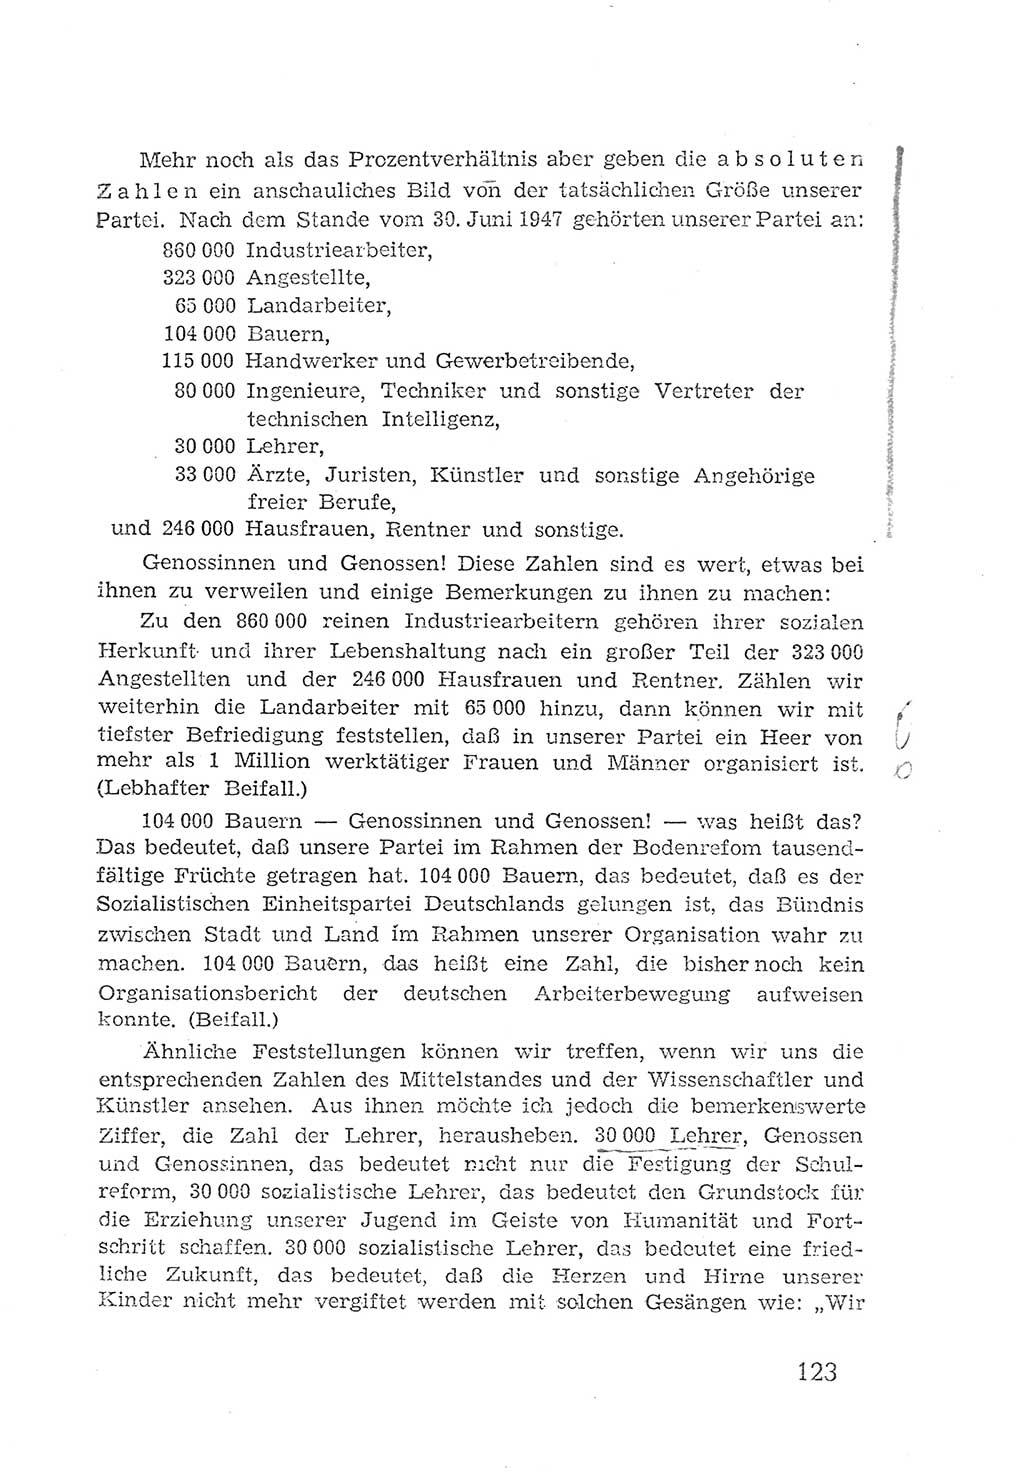 Protokoll der Verhandlungen des 2. Parteitages der Sozialistischen Einheitspartei Deutschlands (SED) [Sowjetische Besatzungszone (SBZ) Deutschlands] 1947, Seite 123 (Prot. Verh. 2. PT SED SBZ Dtl. 1947, S. 123)